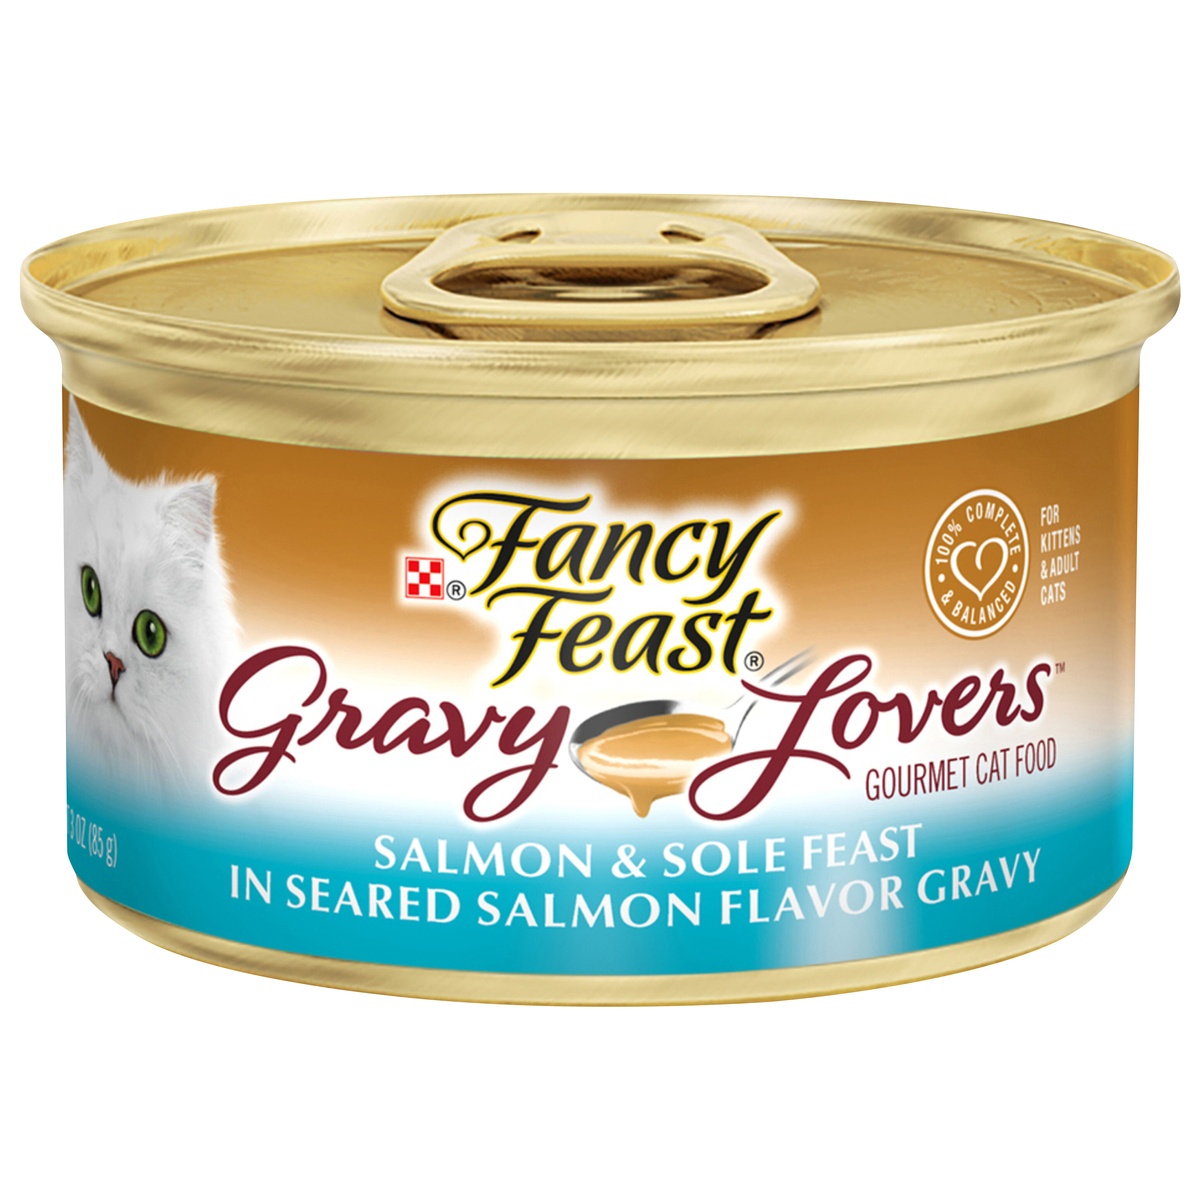 slide 1 of 8, Purina Fancy Feast Gravy Lovers Cat Food, Salmon & Sole in Gravy, 3 oz